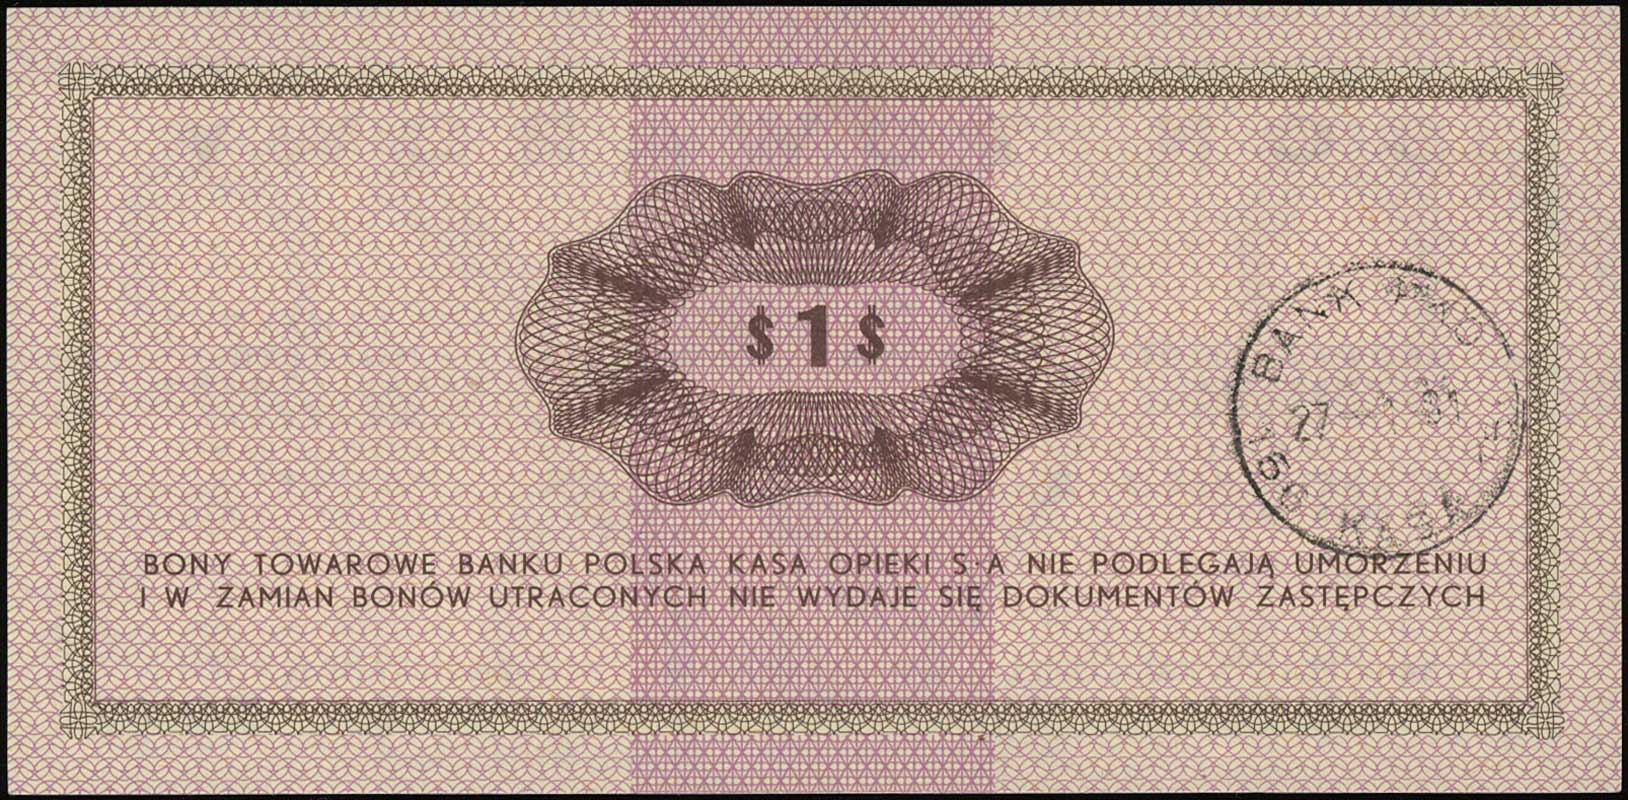 zestaw bonów: 50 centów 1.07.1969 (GC 0024049) i 1 dolar 1.10.1969 (FD 1297693), Miłczak B16c i B17b, wyśmienicie zachowane, razem 2 sztuki